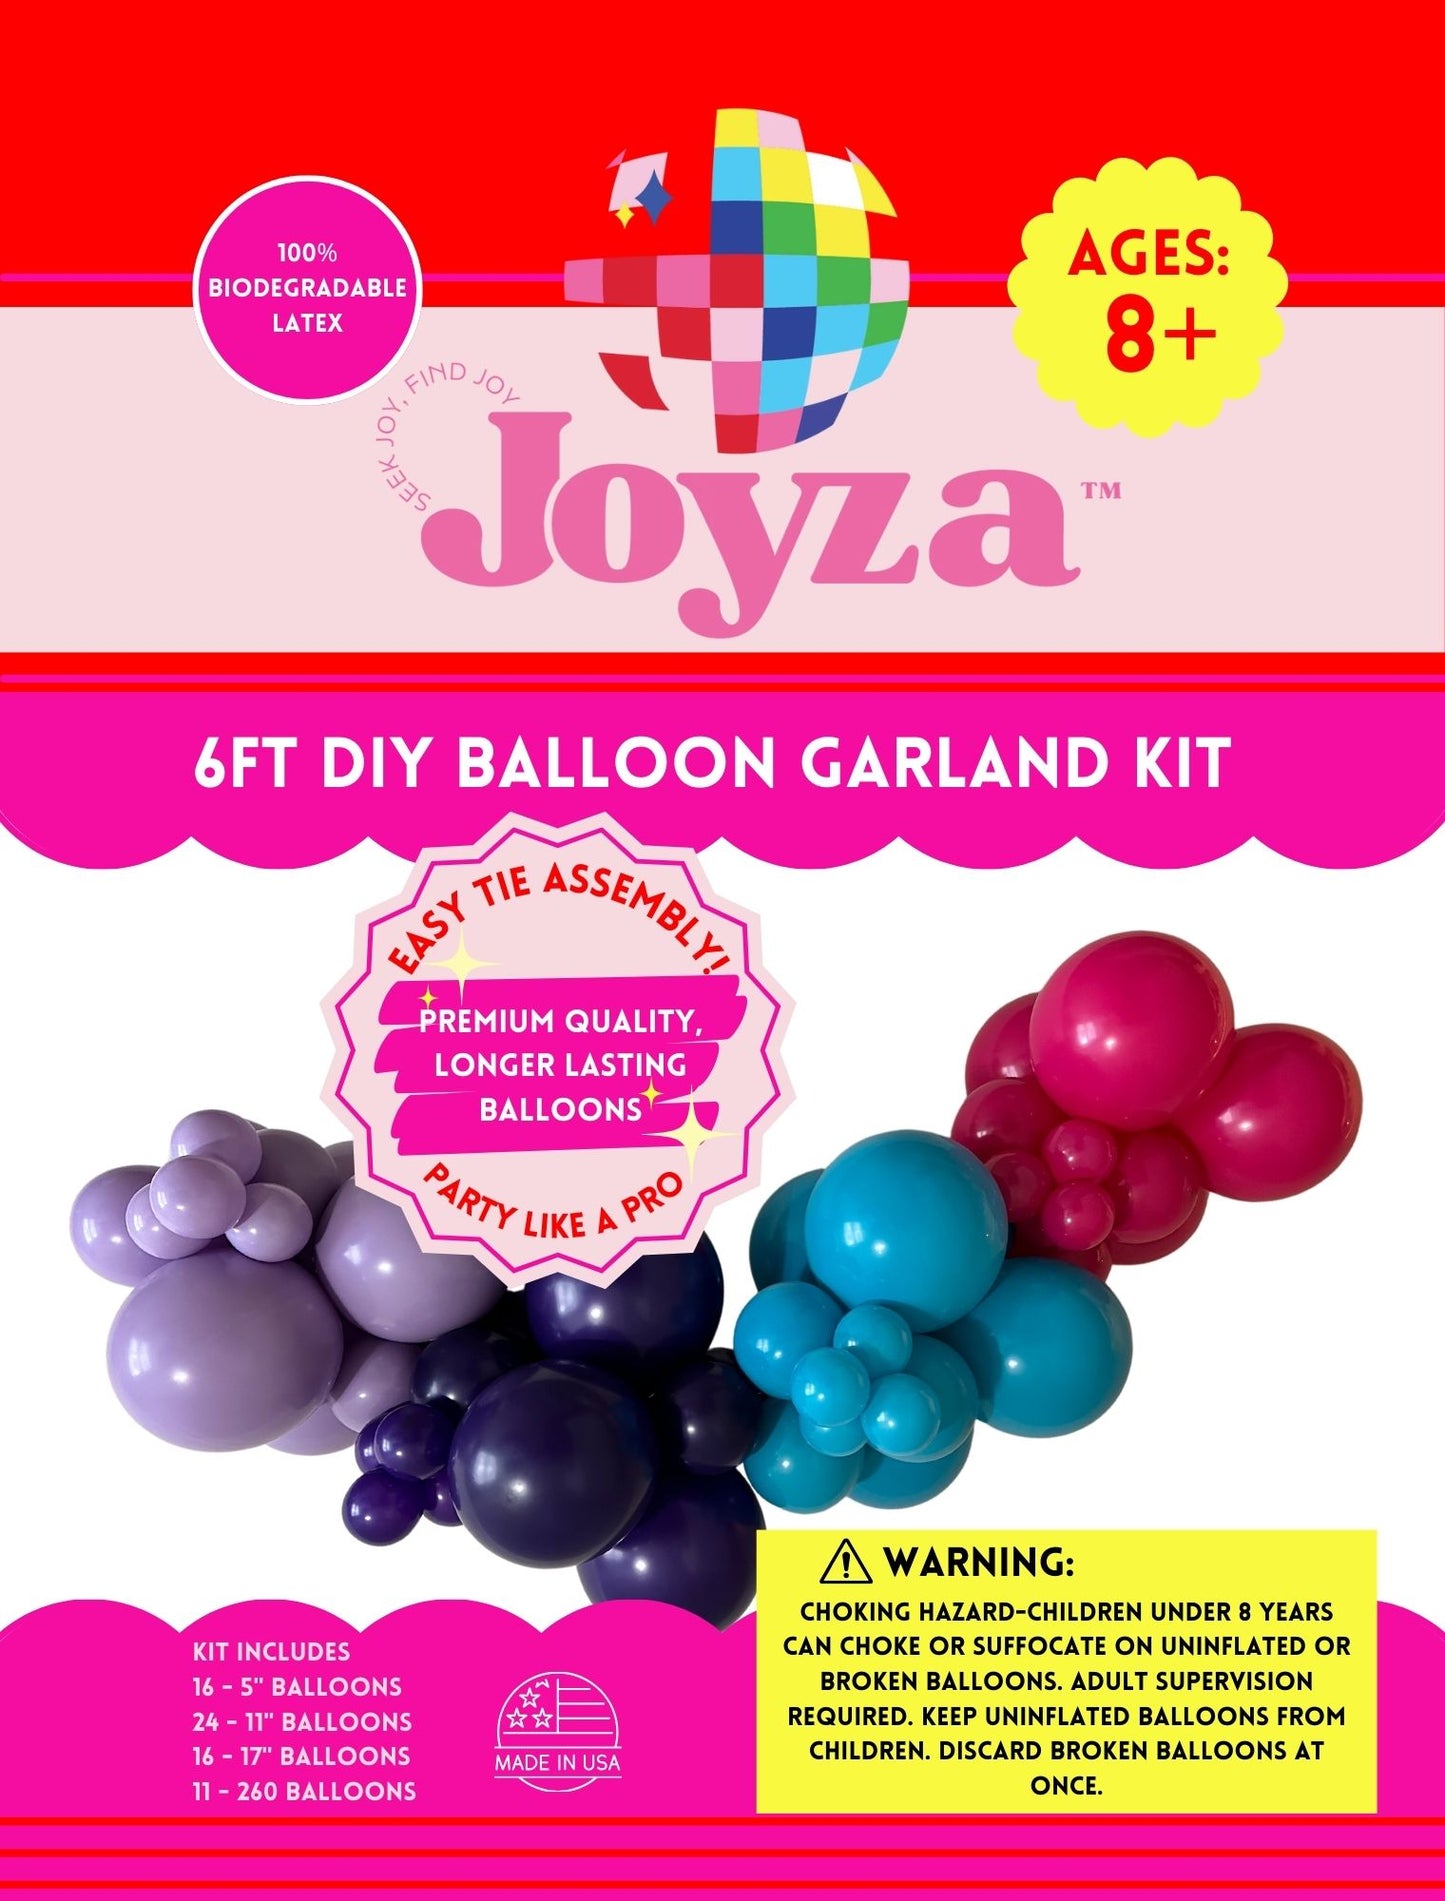 6ft "FUN" DIY Balloon Garland Kit